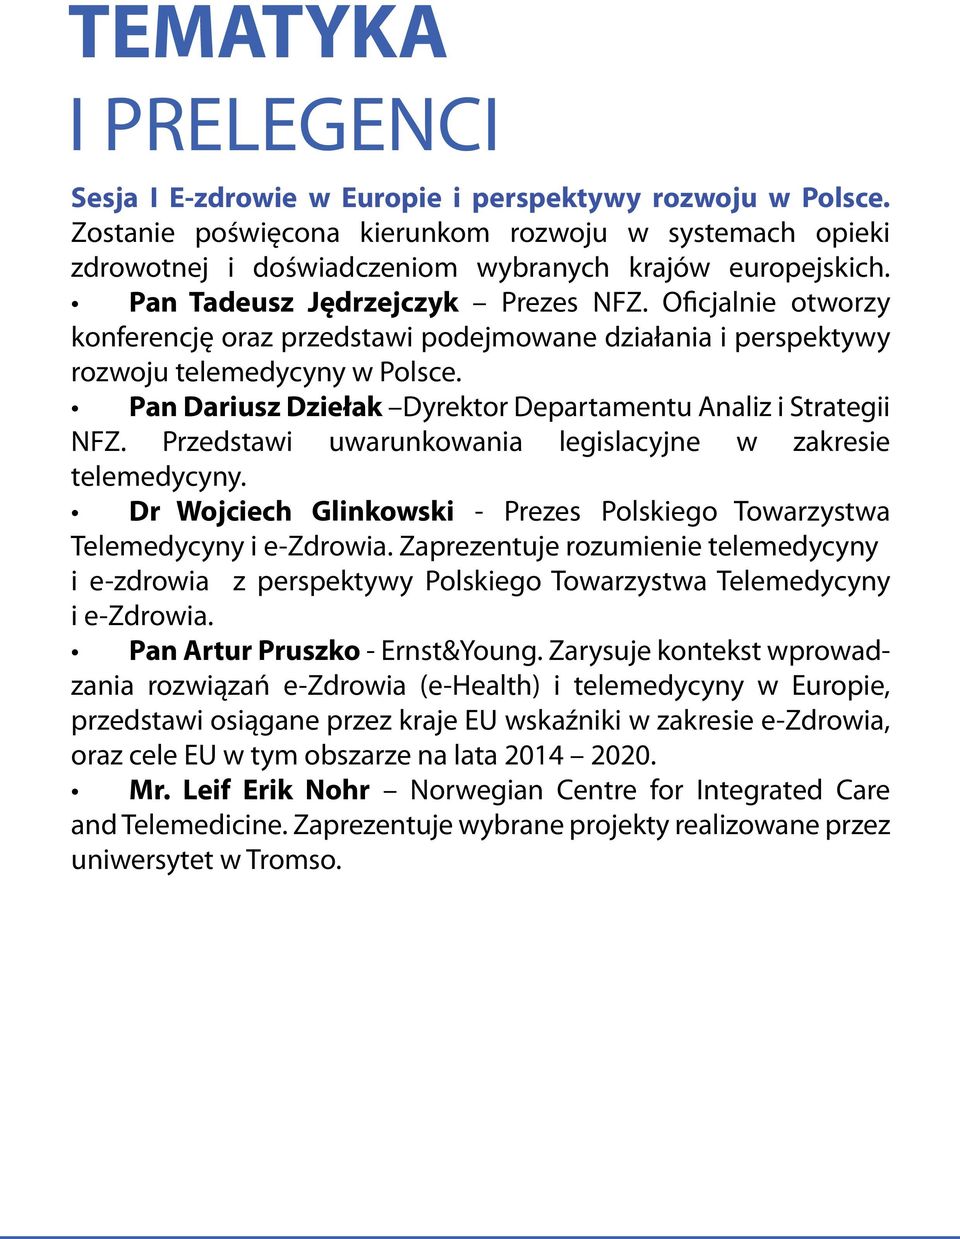 Pan Dariusz Dziełak Dyrektor Departamentu Analiz i Strategii NFZ. Przedstawi uwarunkowania legislacyjne w zakresie telemedycyny.